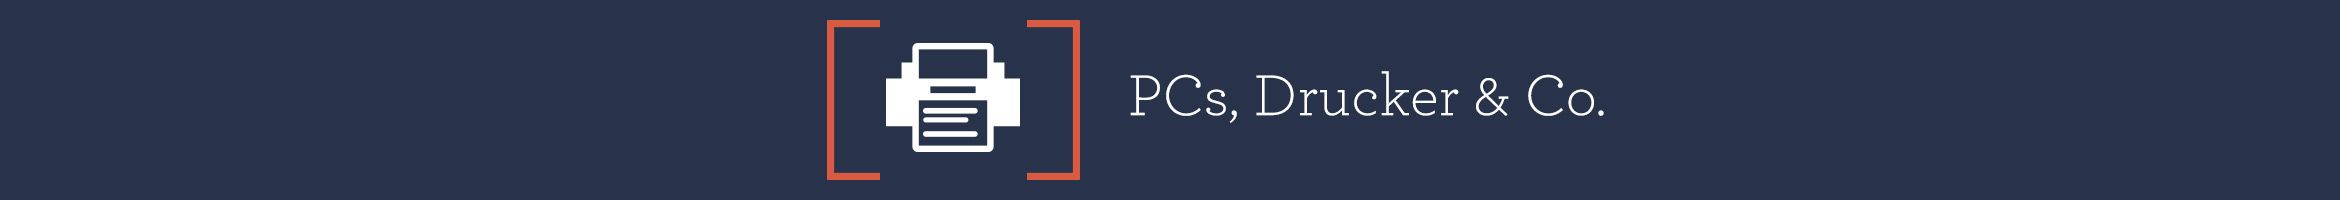 PCs, Drucker & Co. 